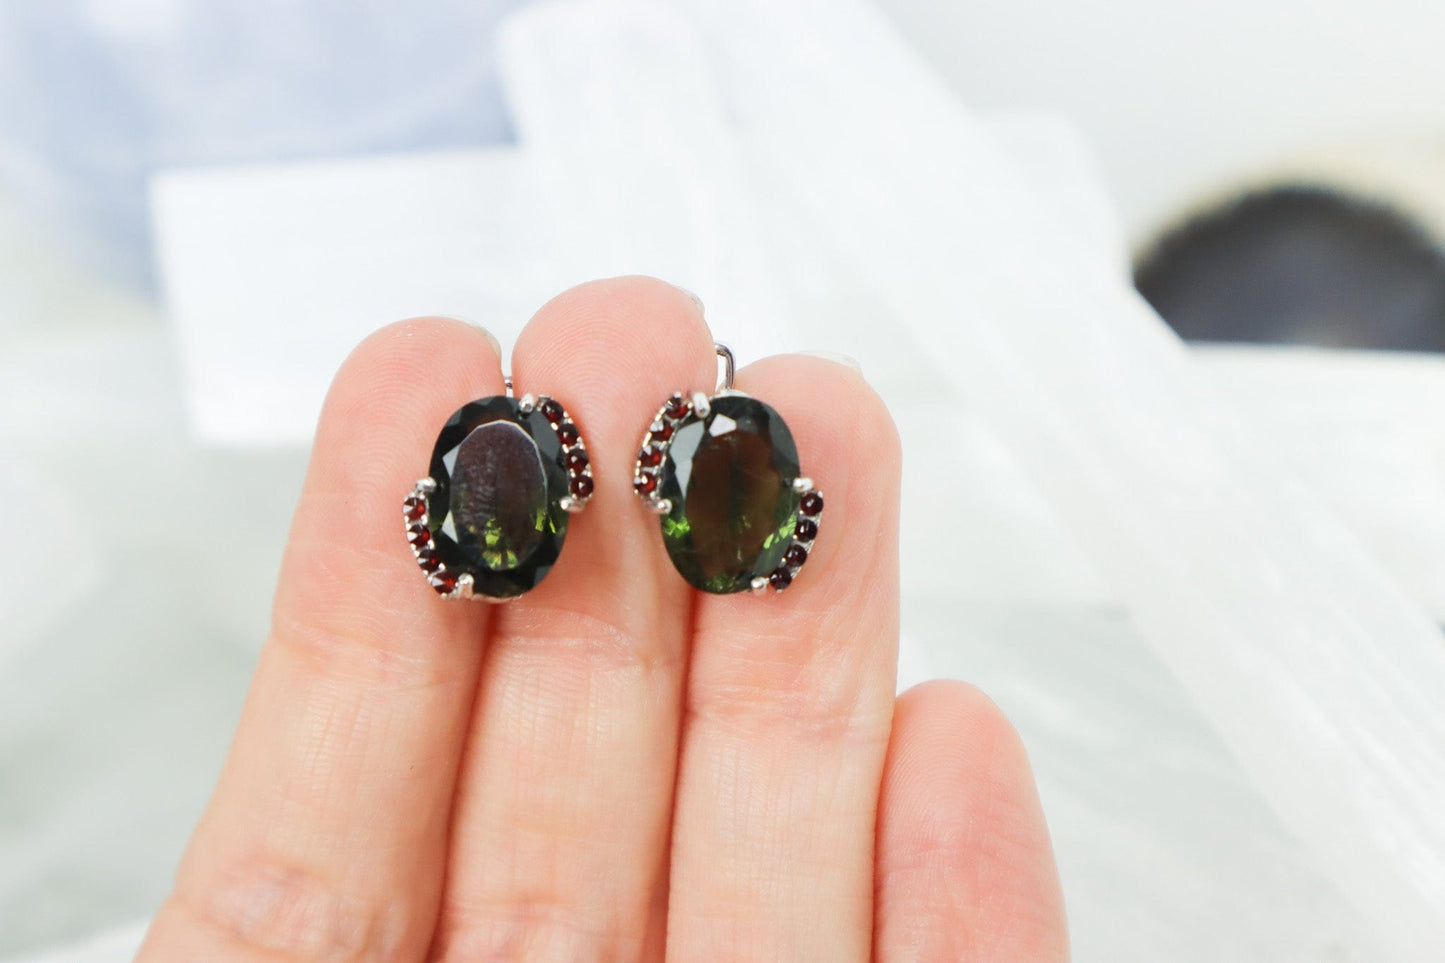 Moldavite Earrings 'Halo' - The Stone of Transformation Earrings Garnet Tali & Loz